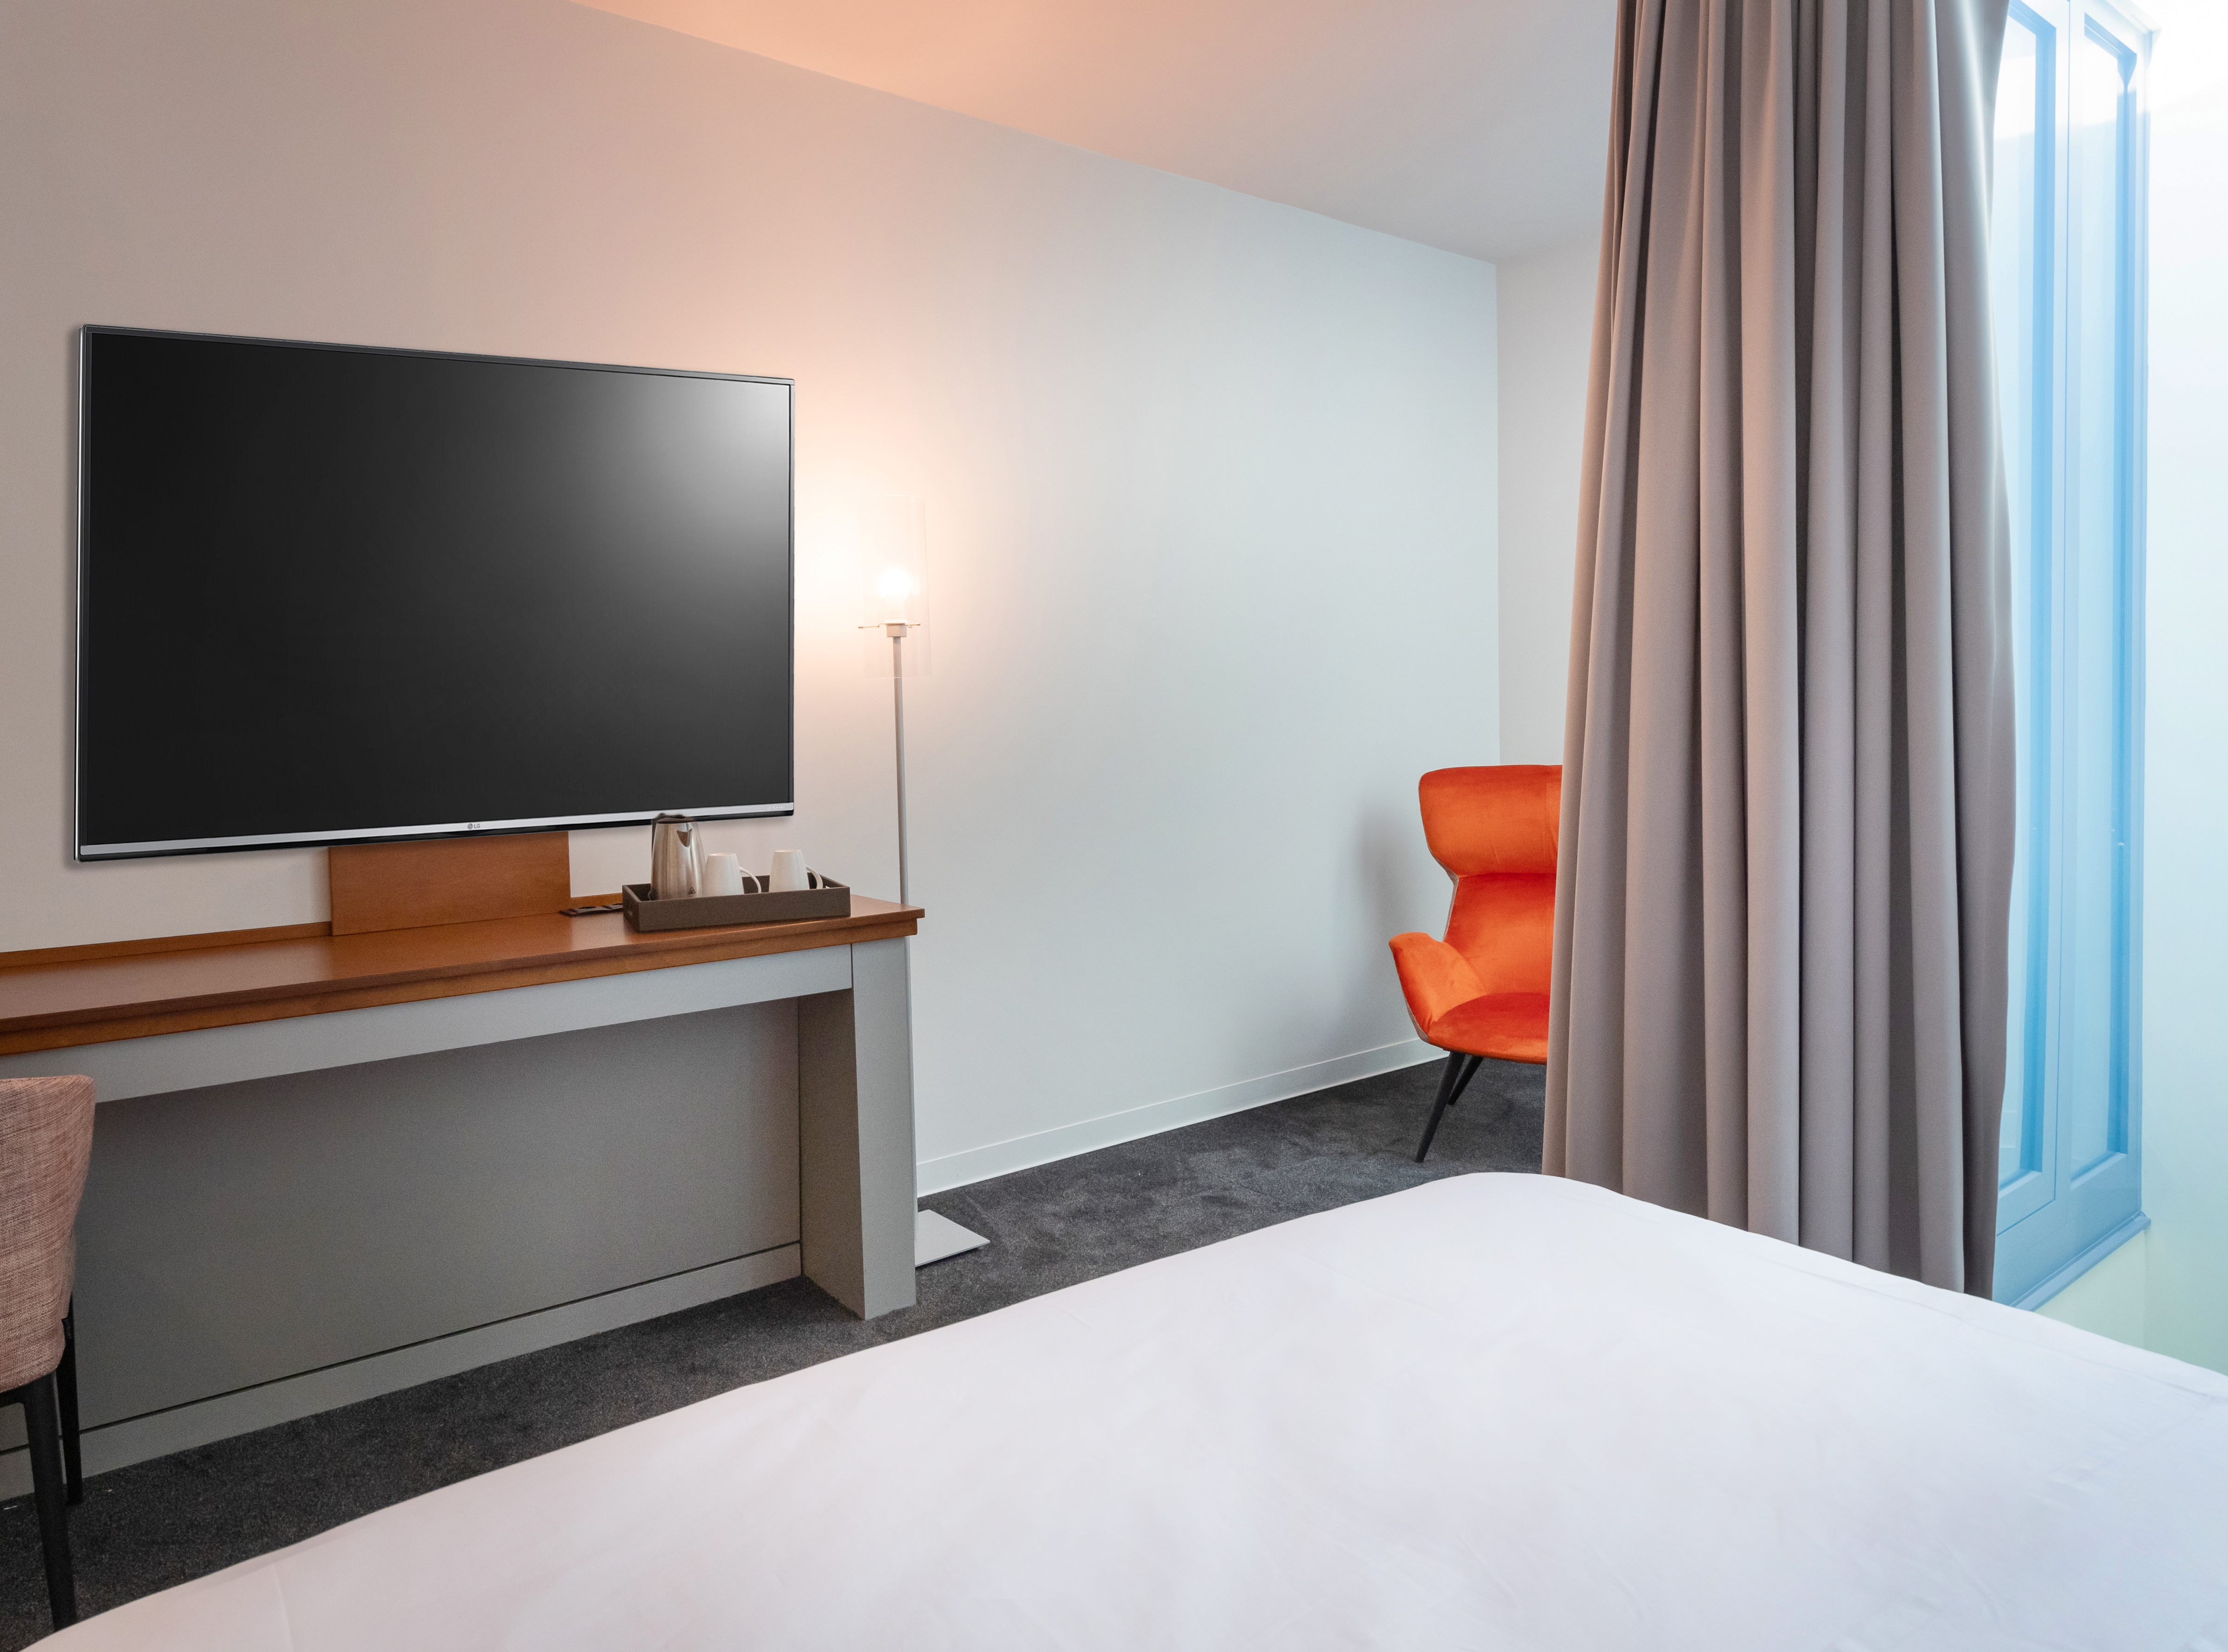 HD-Fernseher, Bett und Sessel in der Hotelsuite